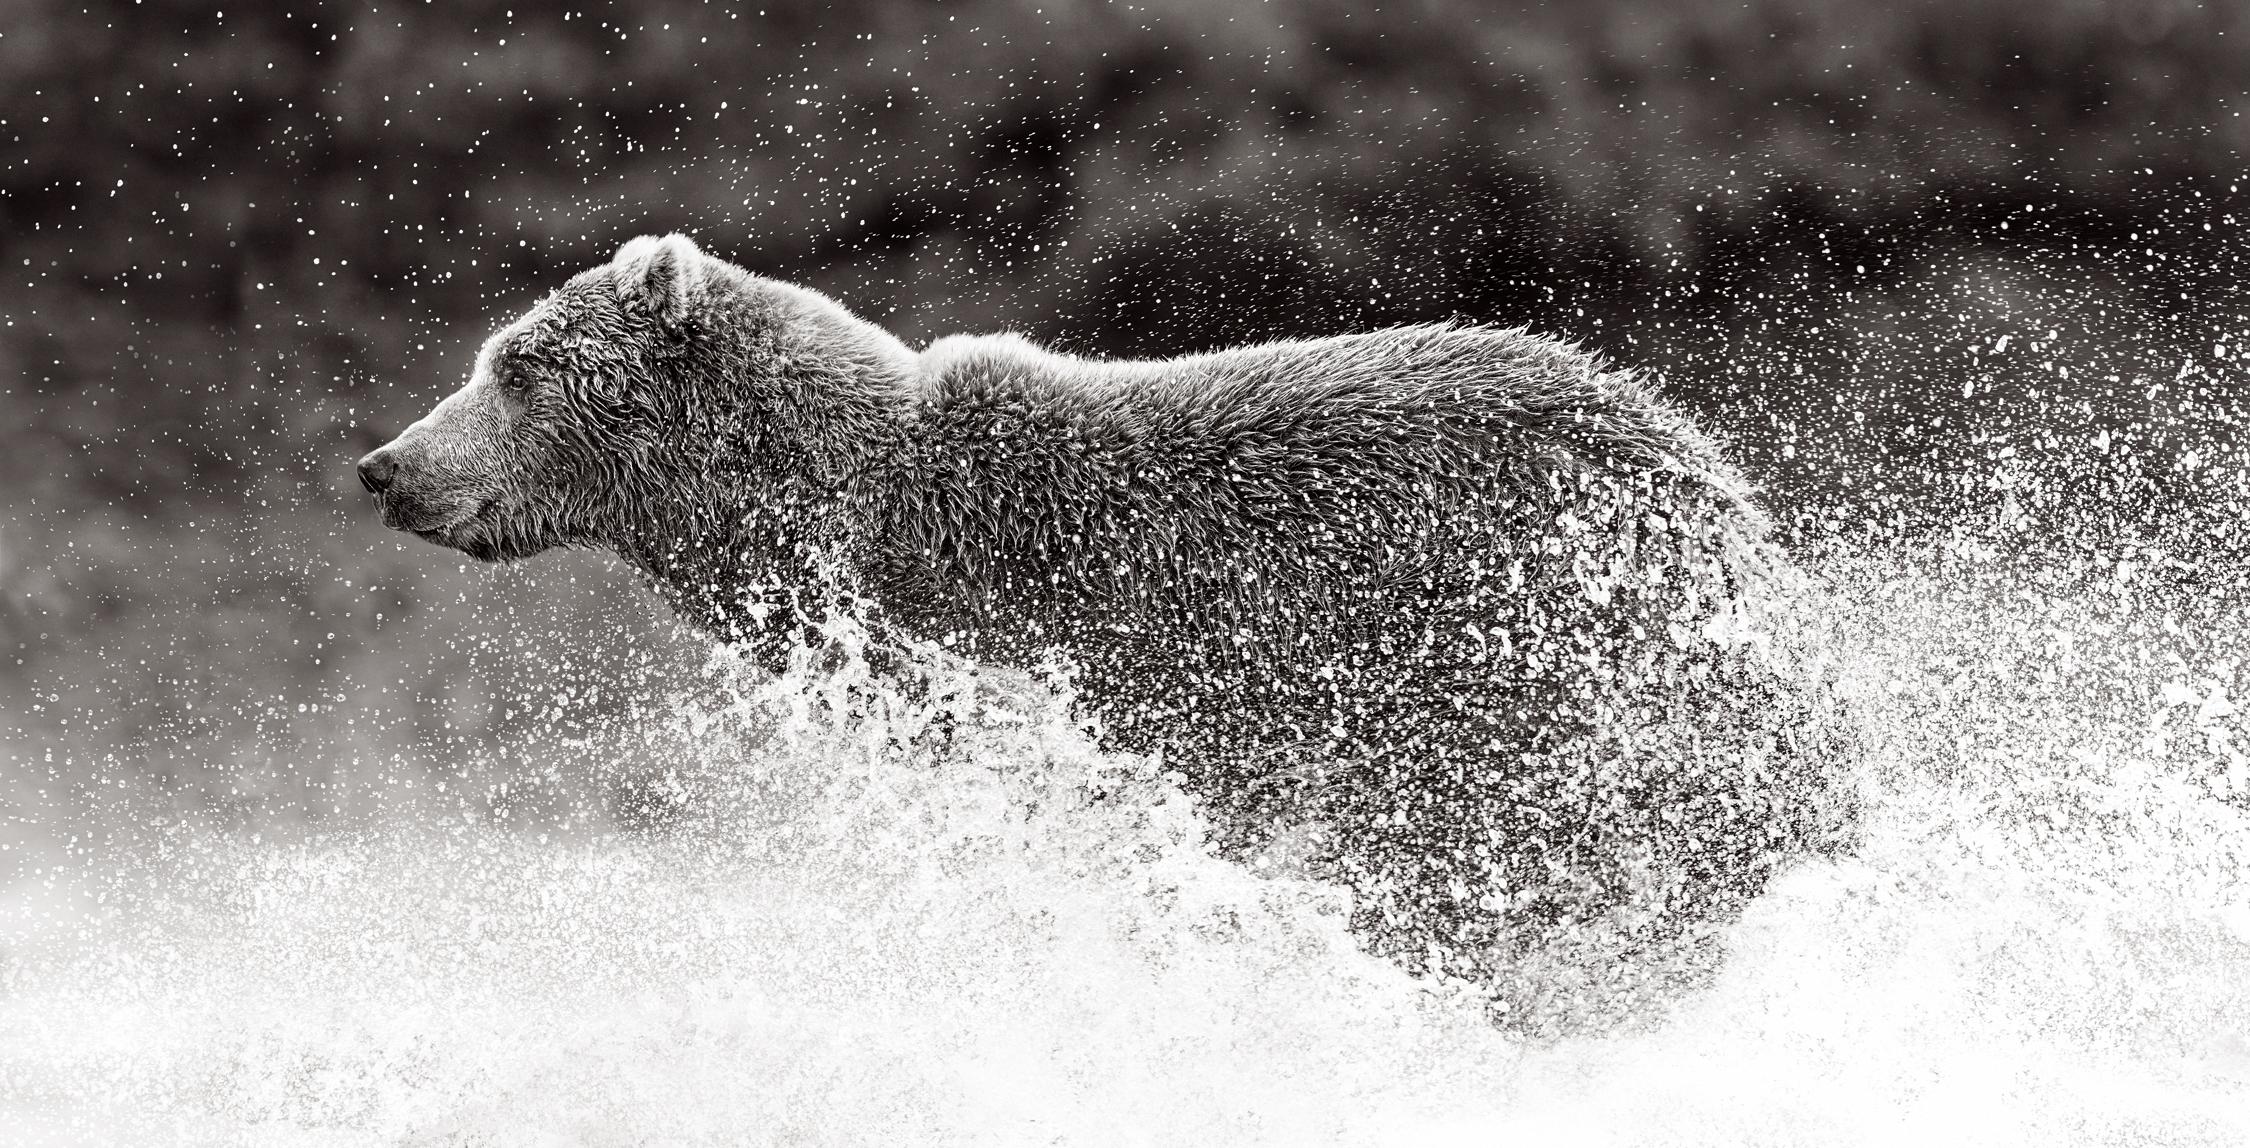 Drew Doggett Black and White Photograph – Schwarz-Weiß-Bild von braunen Bären läuft mit Wasser plätschert um ihn herum 